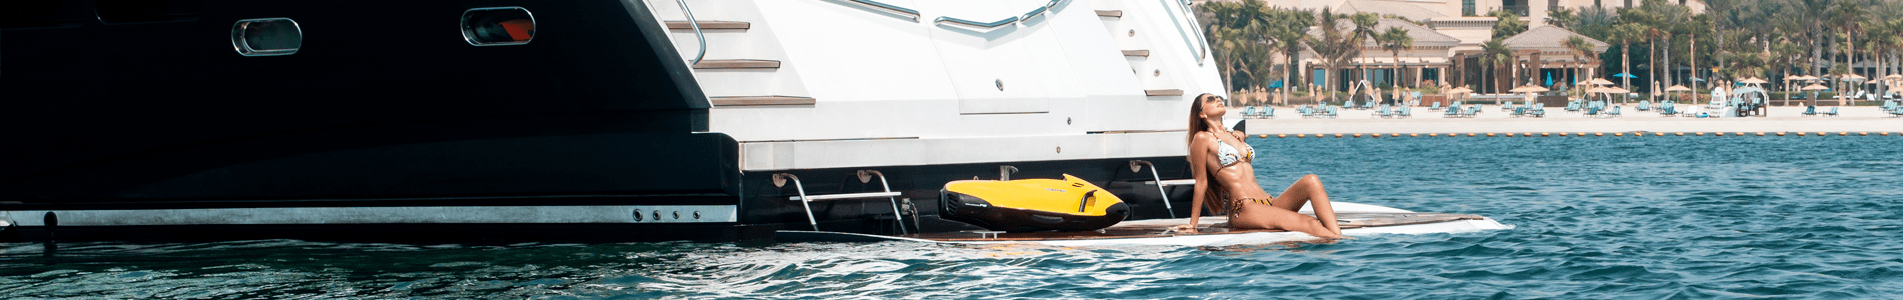 Buy Luxury Yachts in Dubai